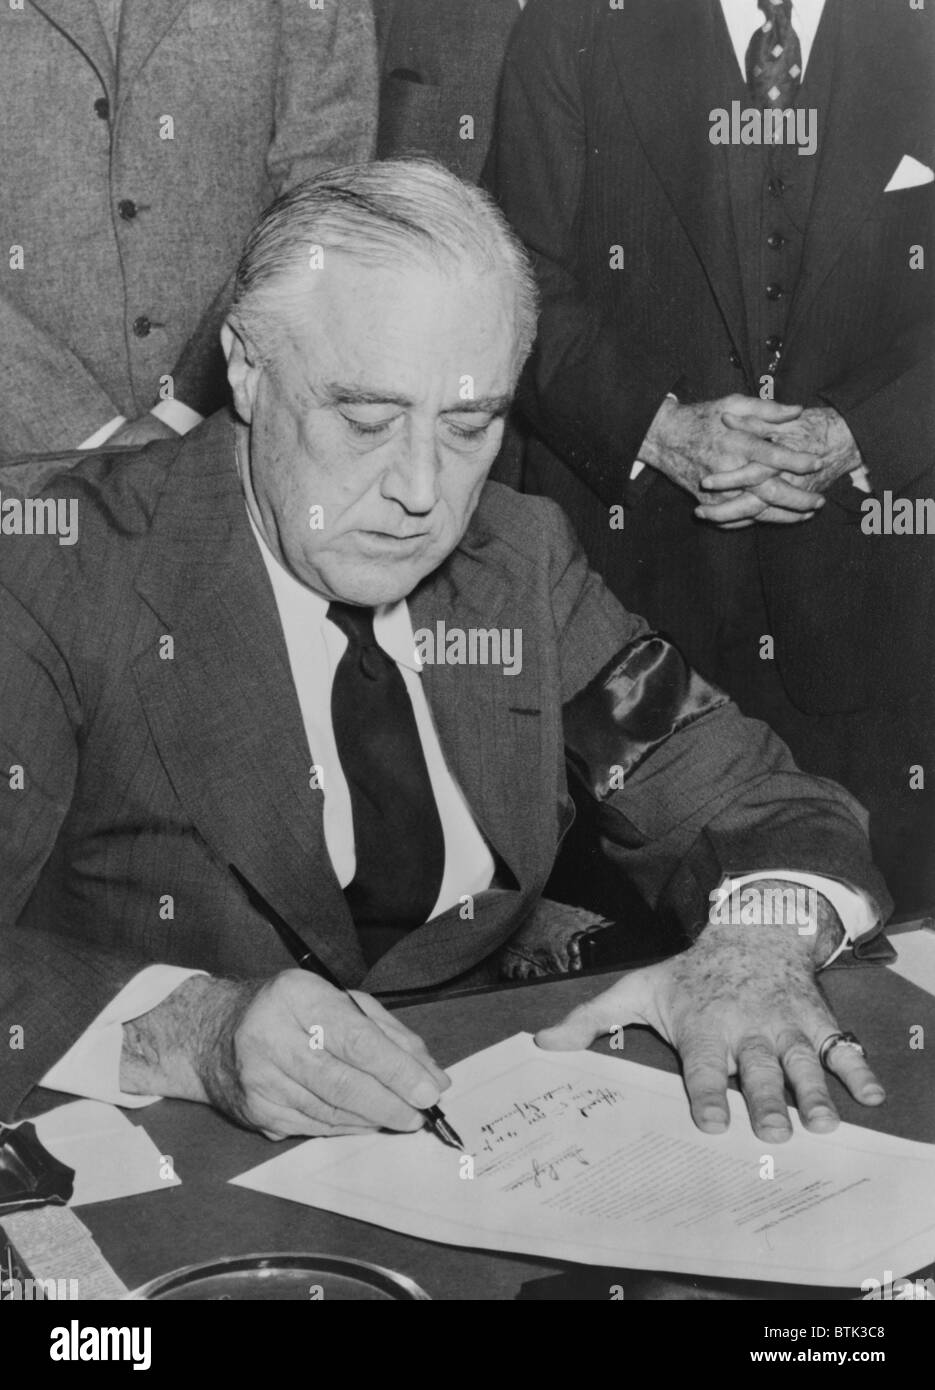 Le Président Roosevelt signe la déclaration de guerre contre le Japon le 8 décembre 1941, le jour suivant l'attaque surprise japonaise sur Pearl Harbor. Banque D'Images